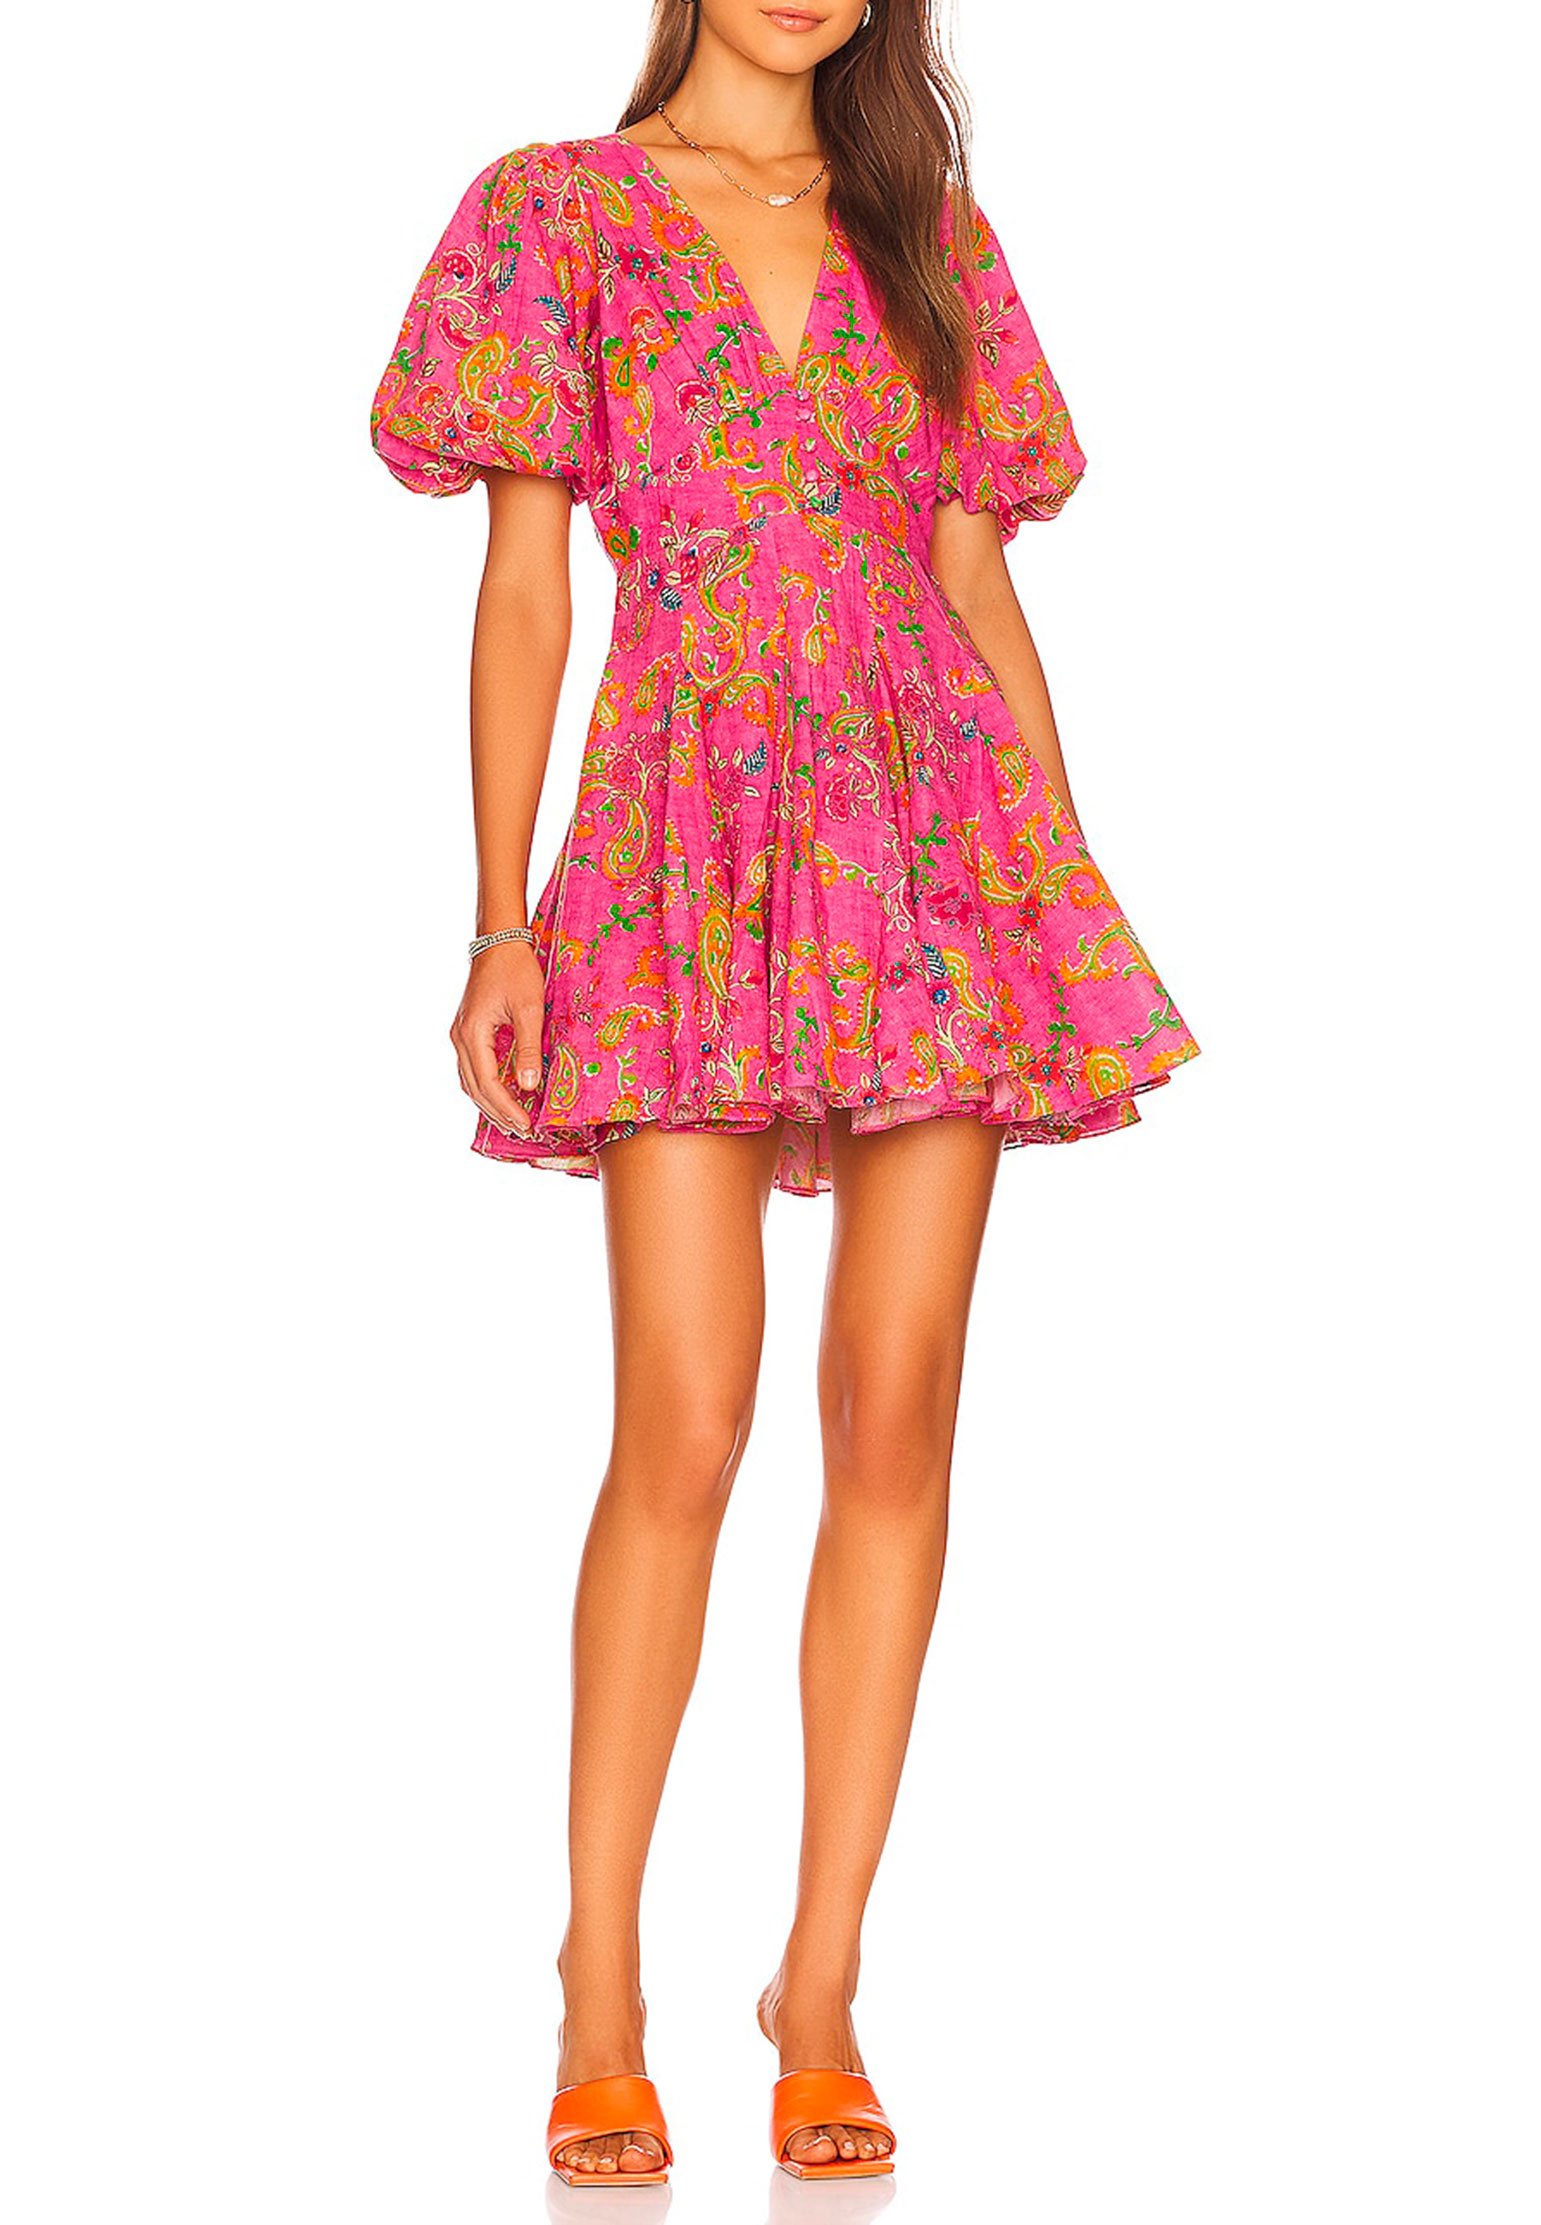 Dress HEMANT&NANDITA Color: fuchsia (Code: 1121) in online store Allure